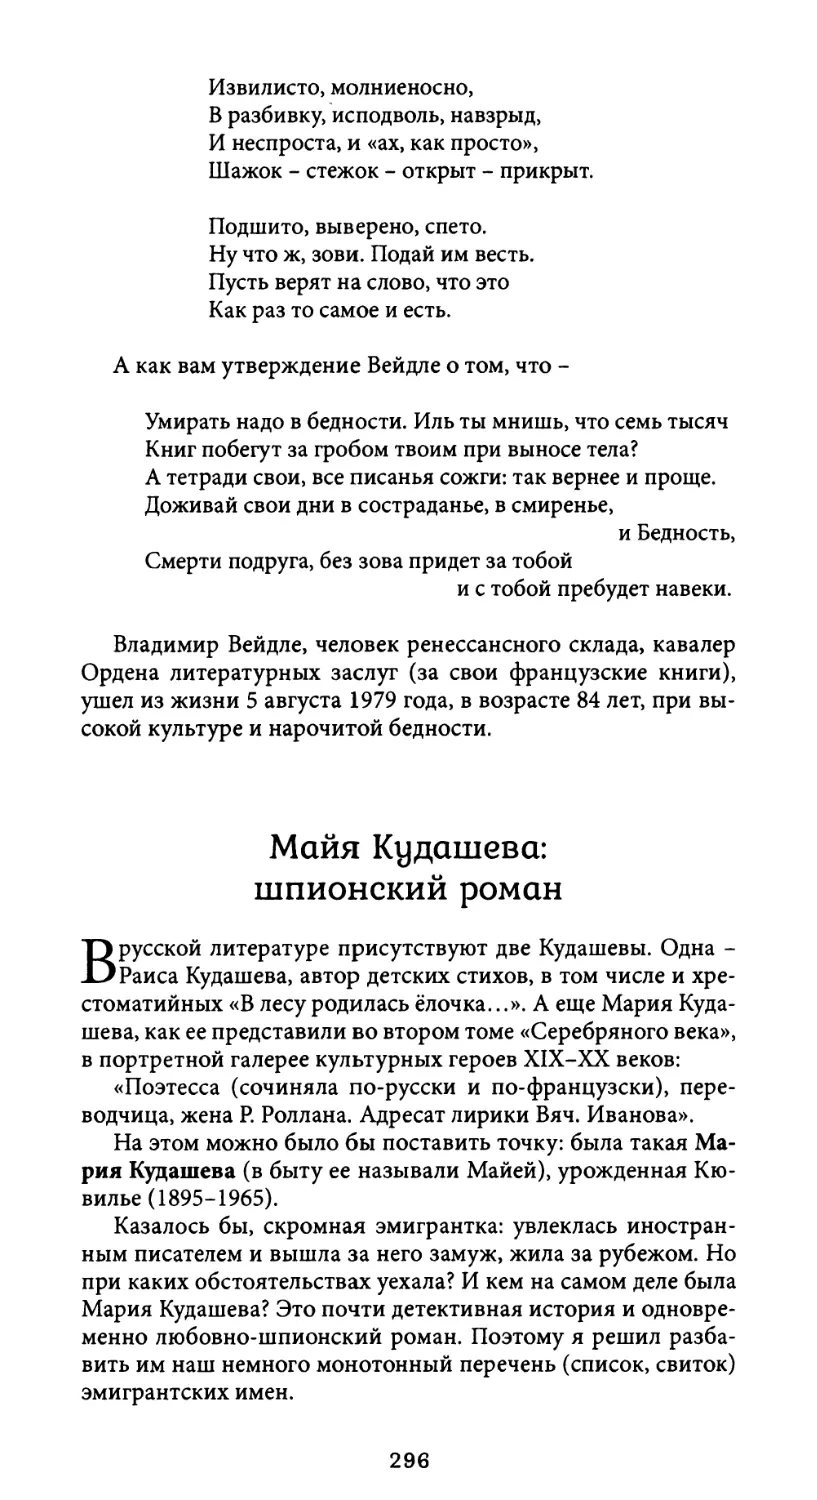 Майя Кудашева: шпионский роман